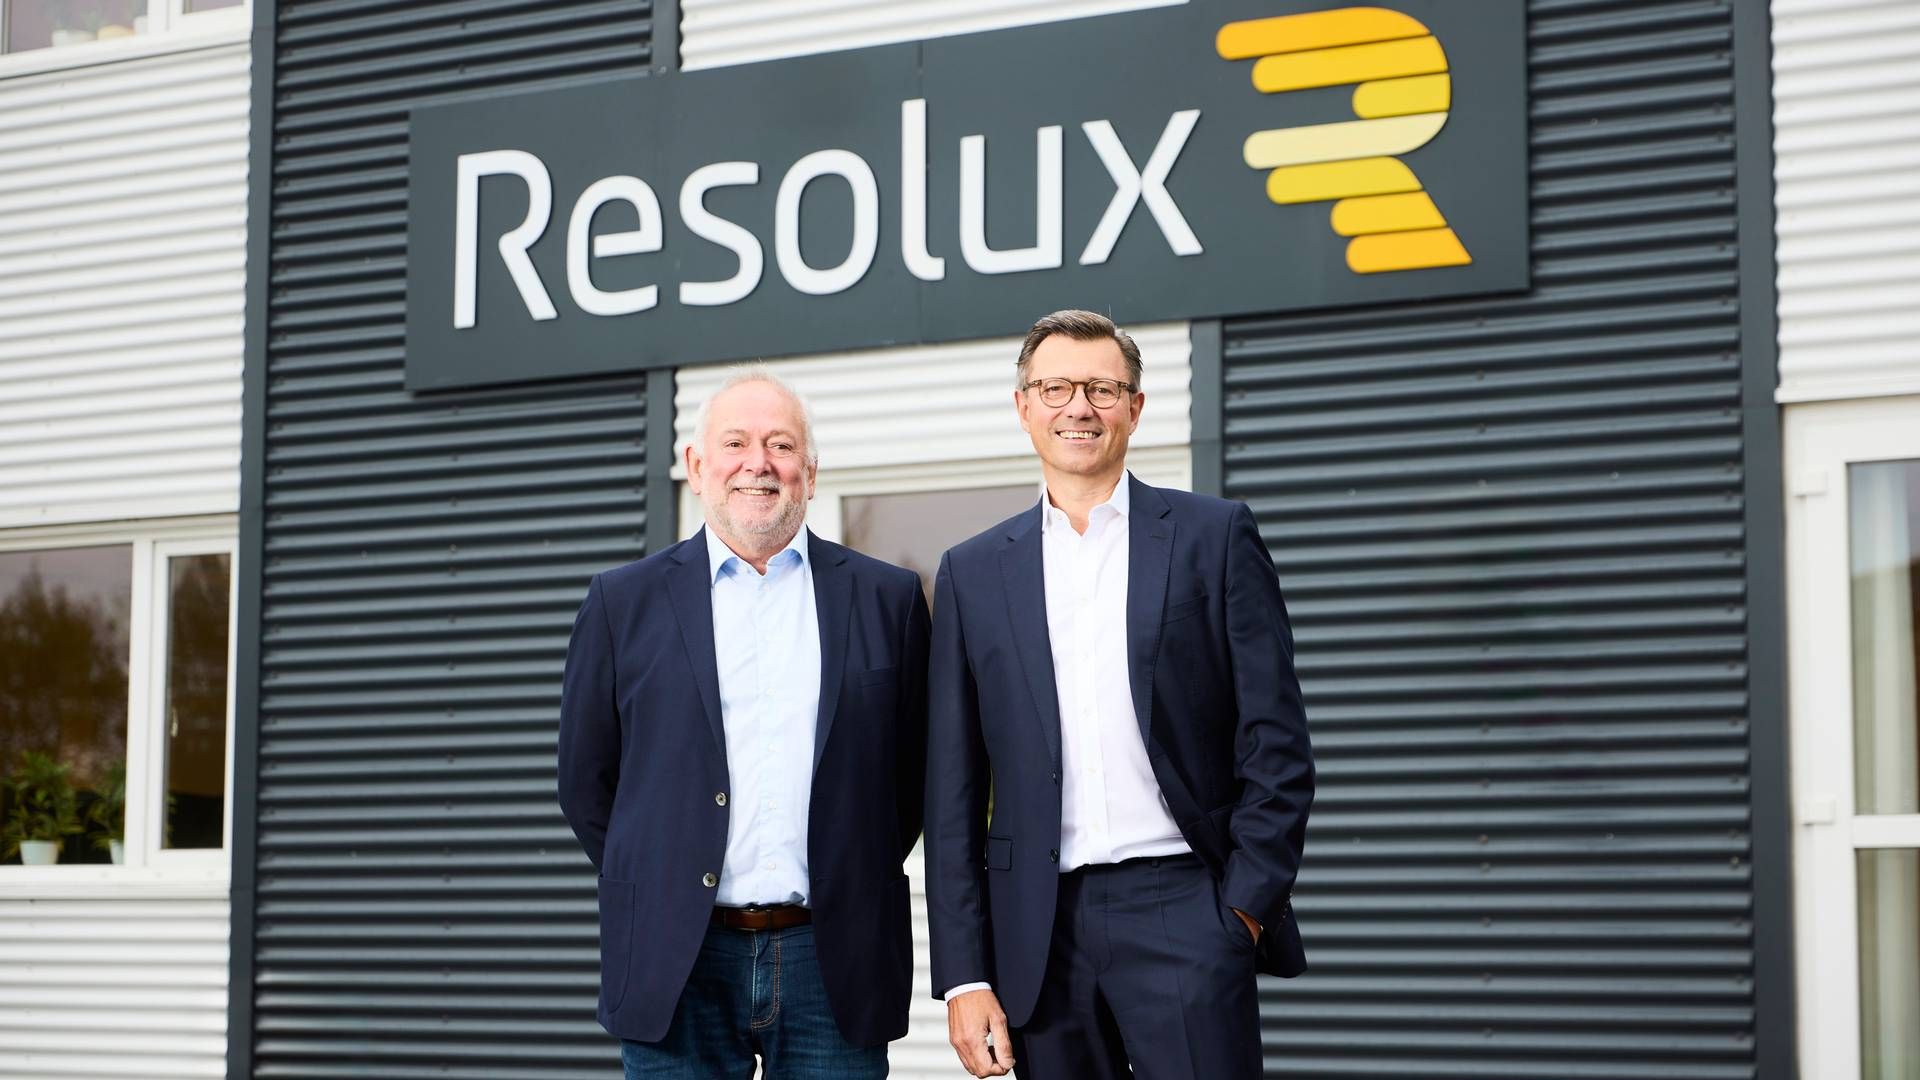 ”Jeg ser et stort potentiale for Resolux’ ydelser, selvom vindmøllebranchen aktuelt er presset," lyder det fra den nye direktør. | Foto: Pr Resolux